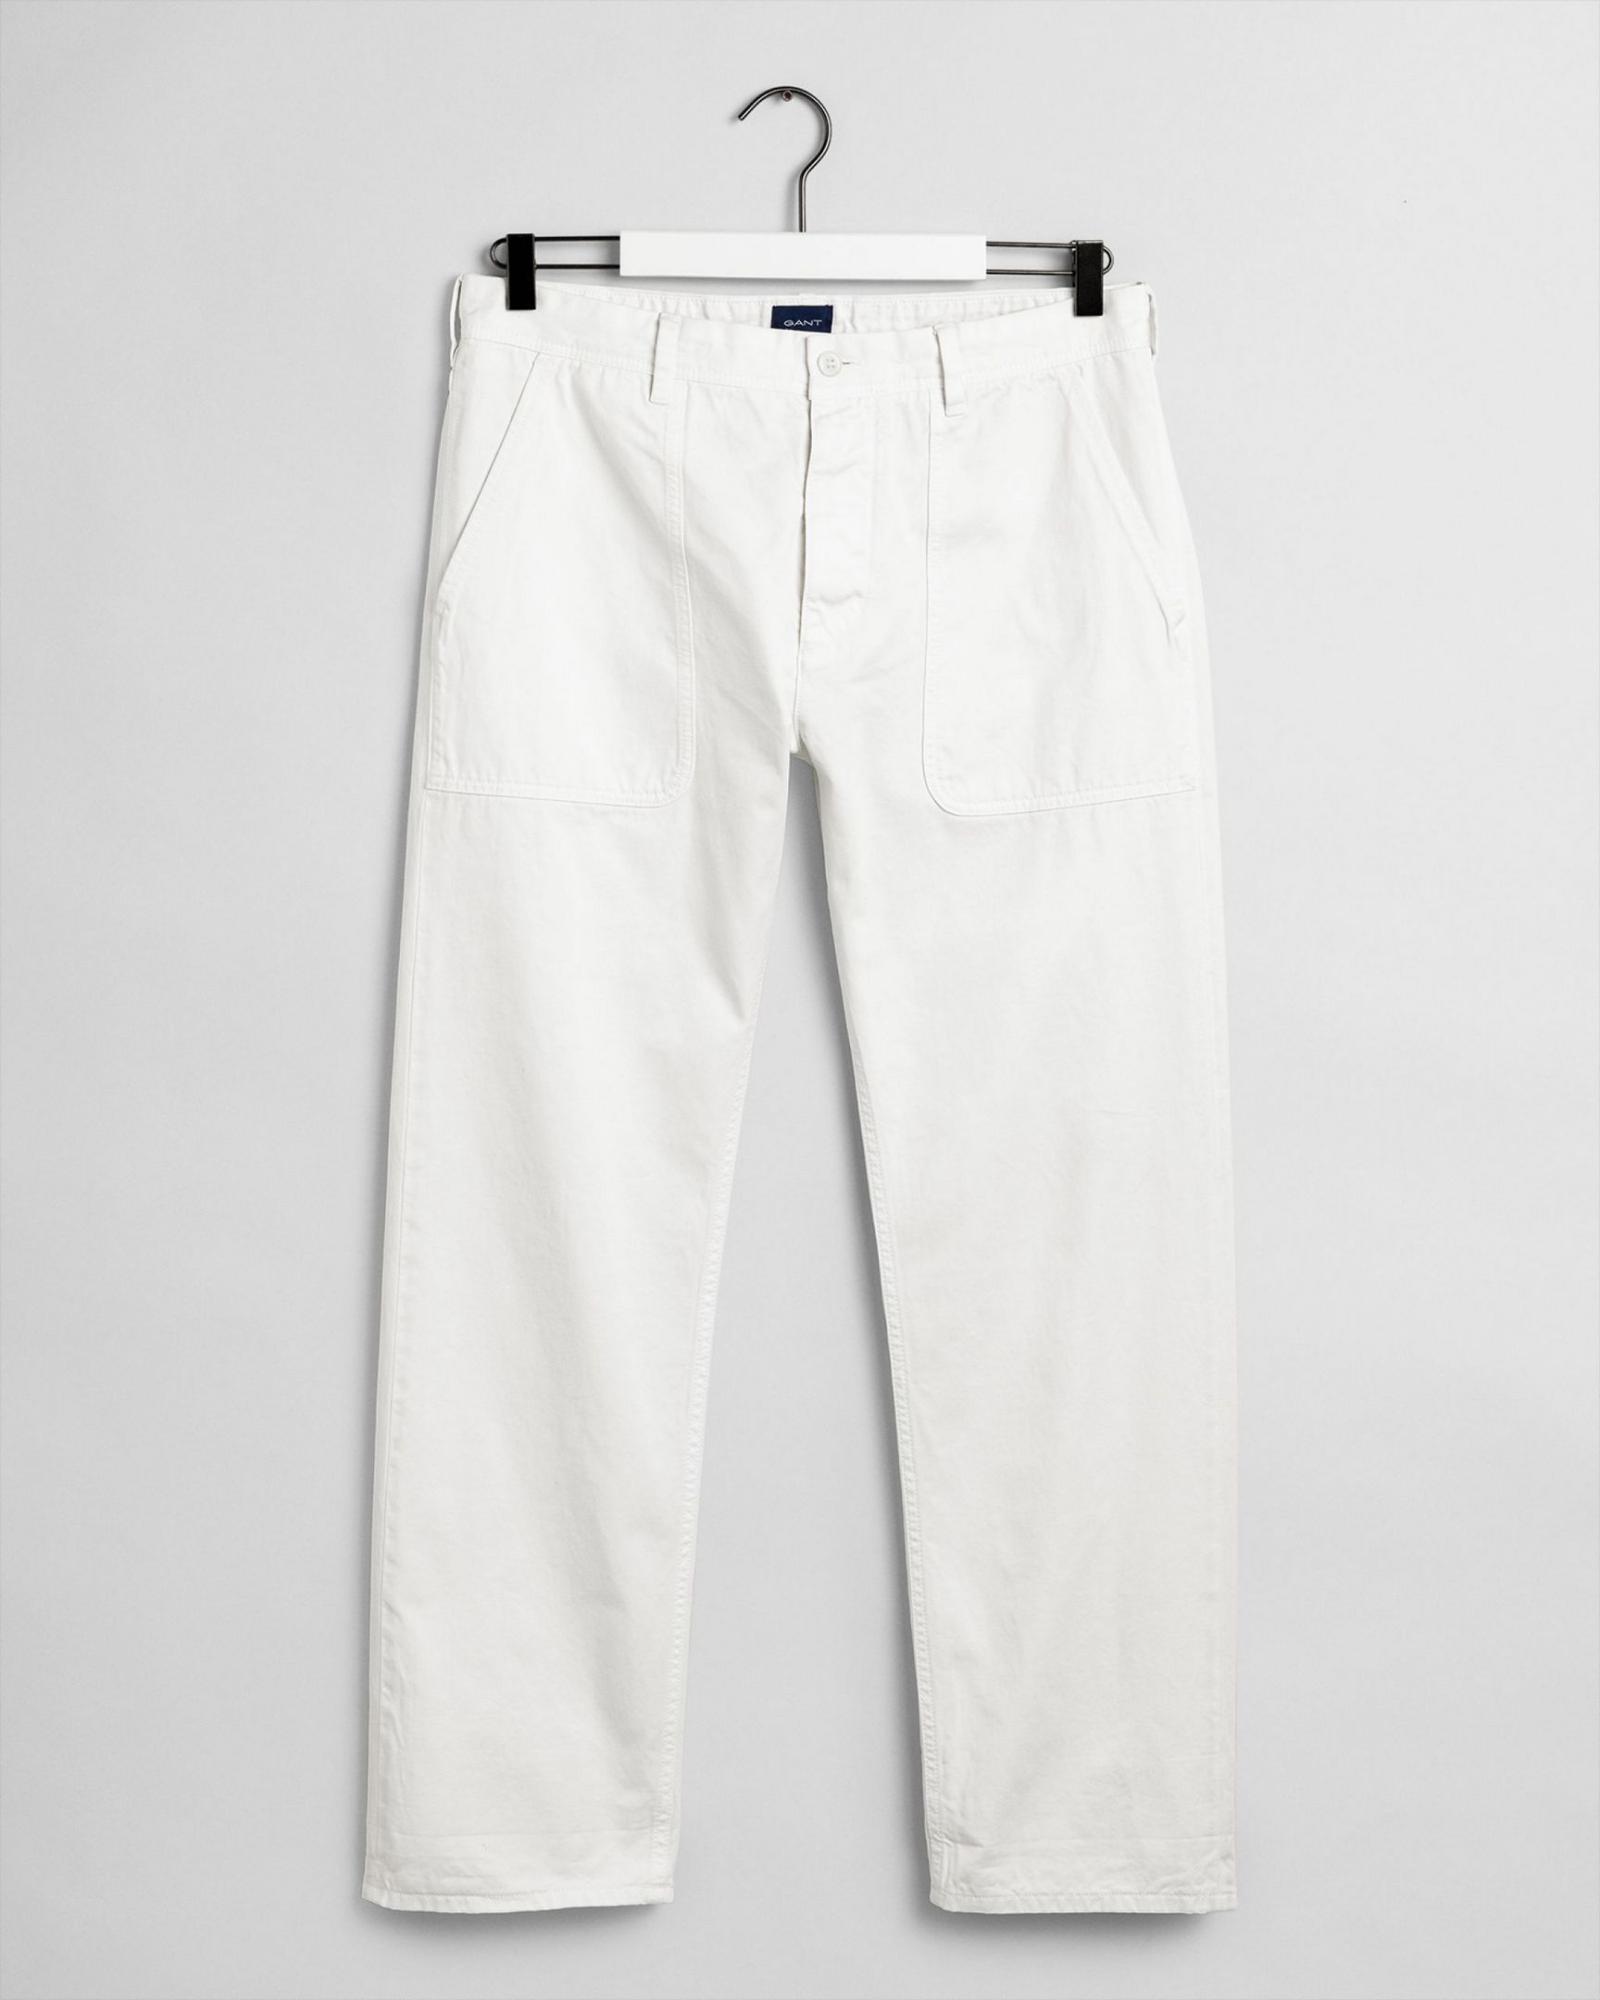 Мужские джинсы Gant, белые